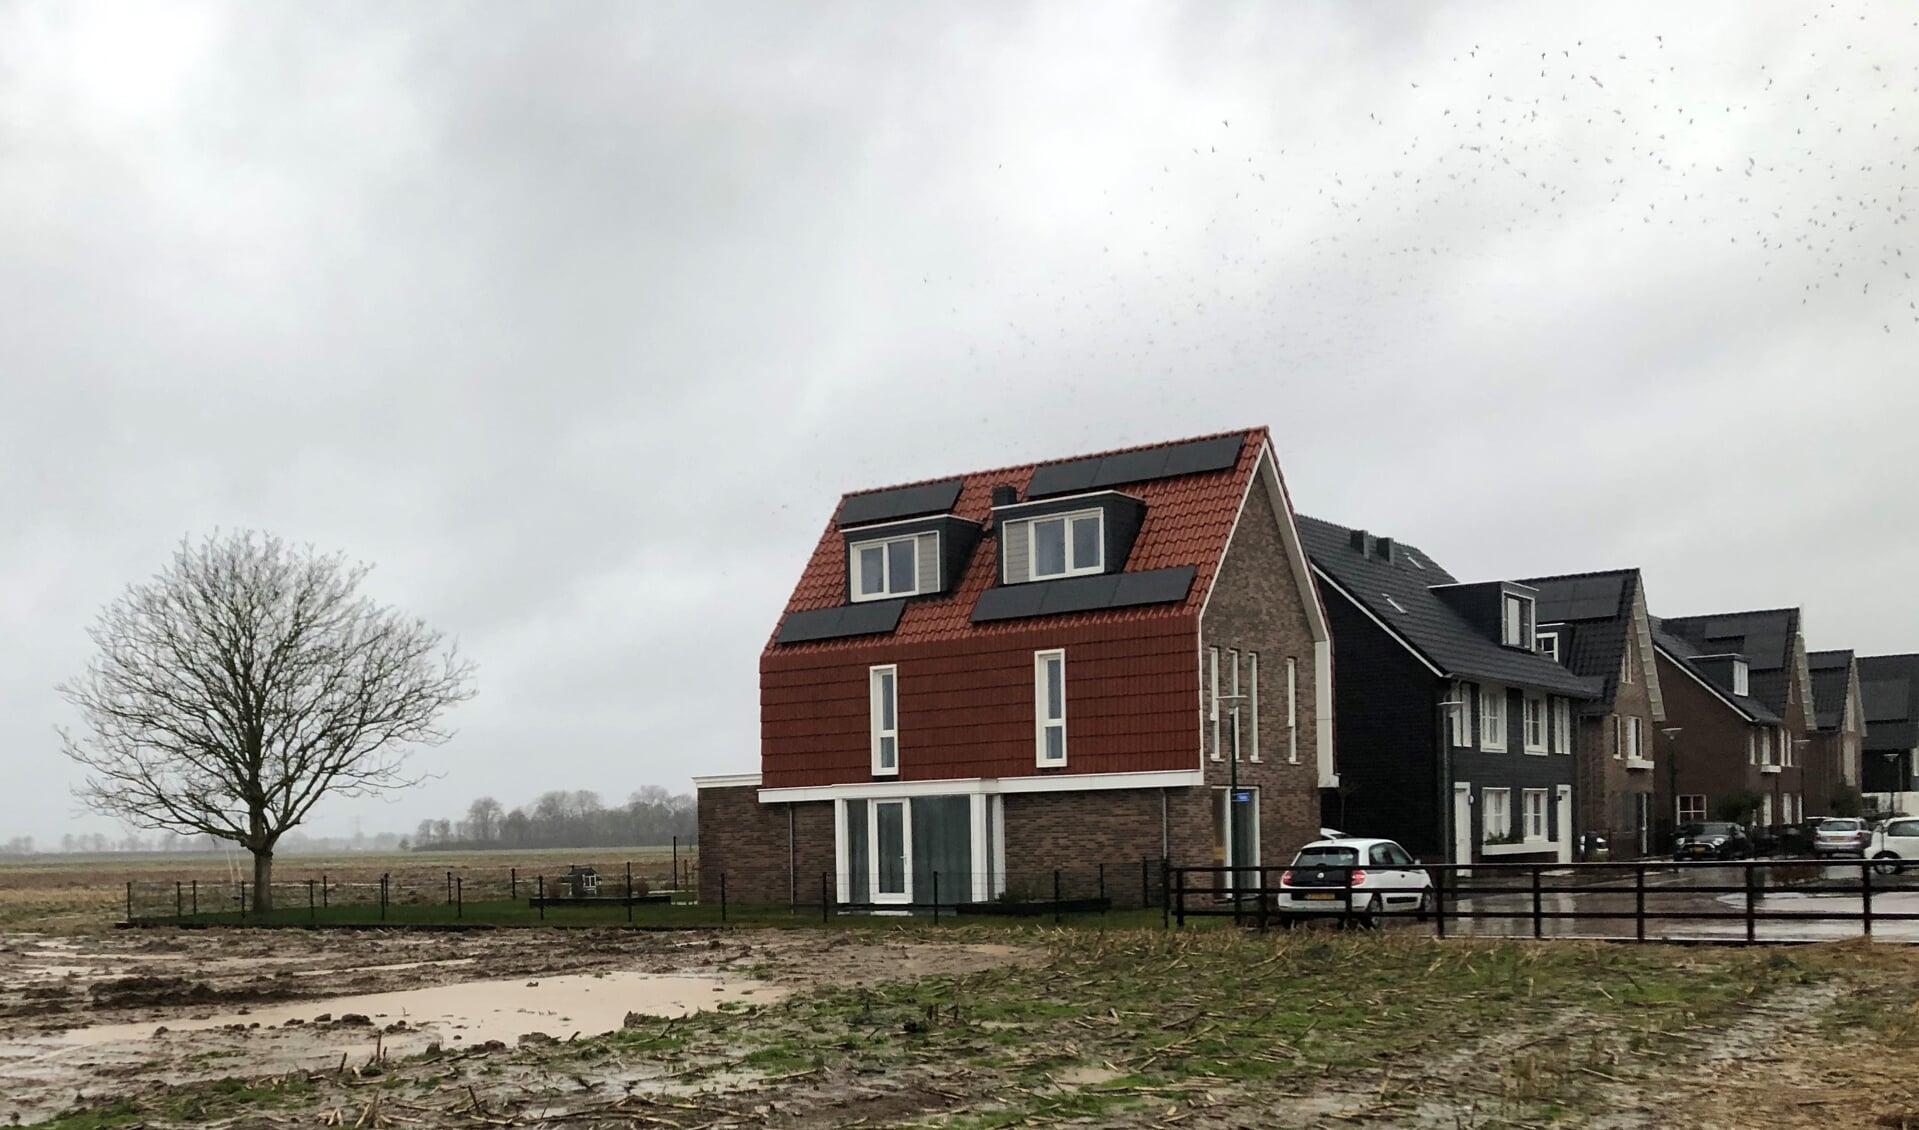 Huizen aan de Fibula in 't Burgje, met links de nieuwbouwlocatie.